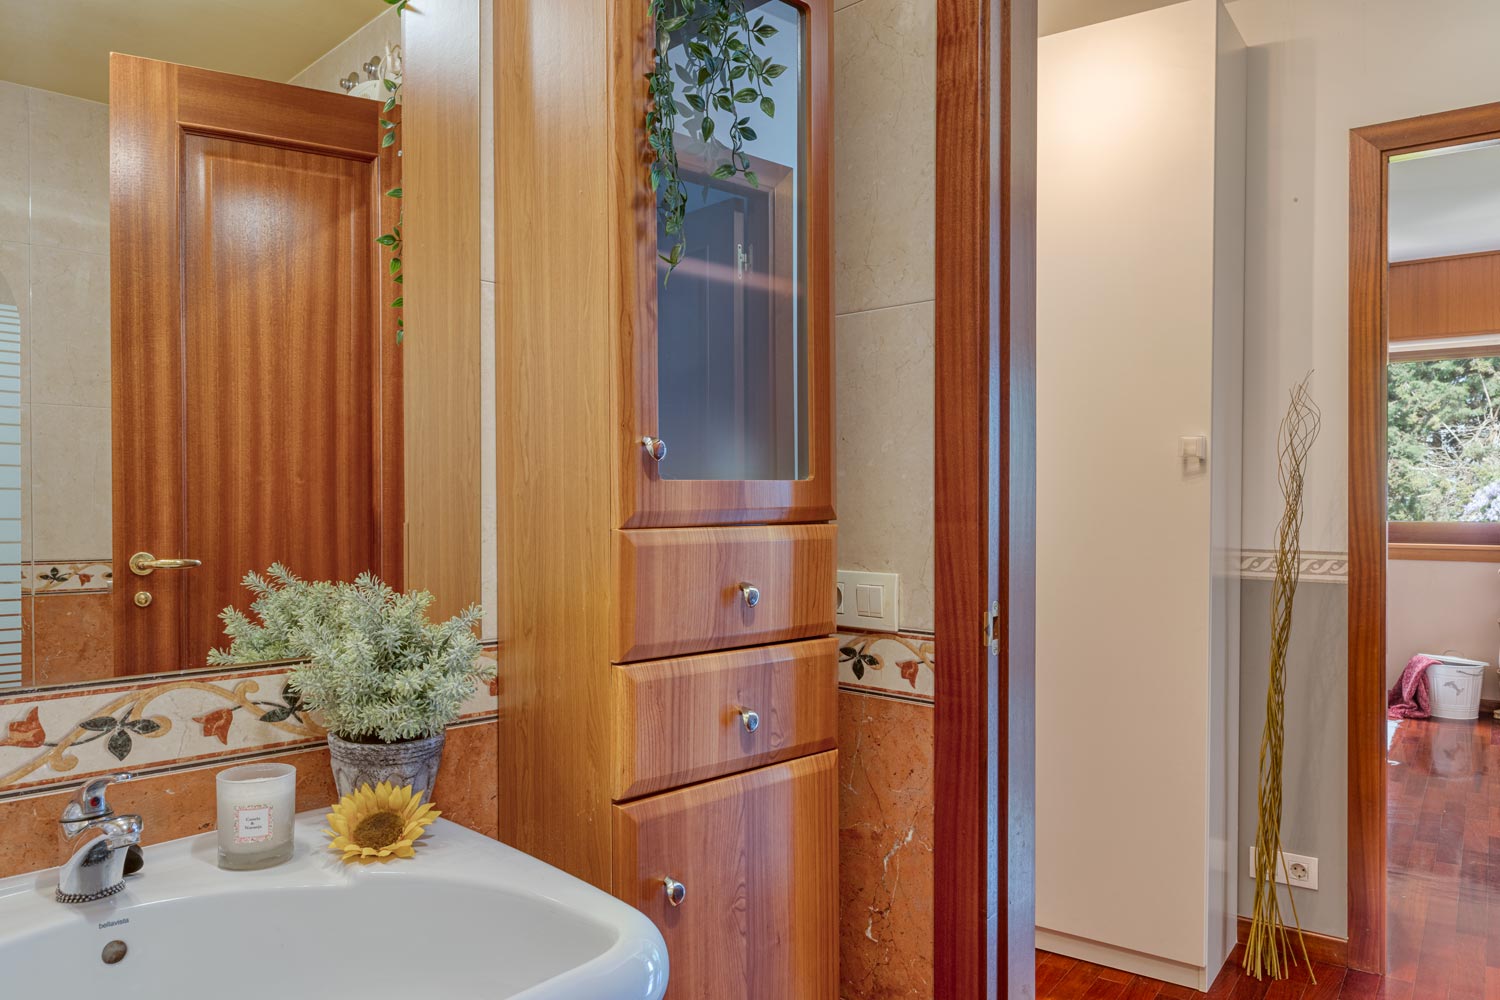 Cuarto de baño con mueble en madera y espejo decorado con elementos vegetales y puerta por que se ve otro dormitorio con ventana por la que se puede ver arboles.